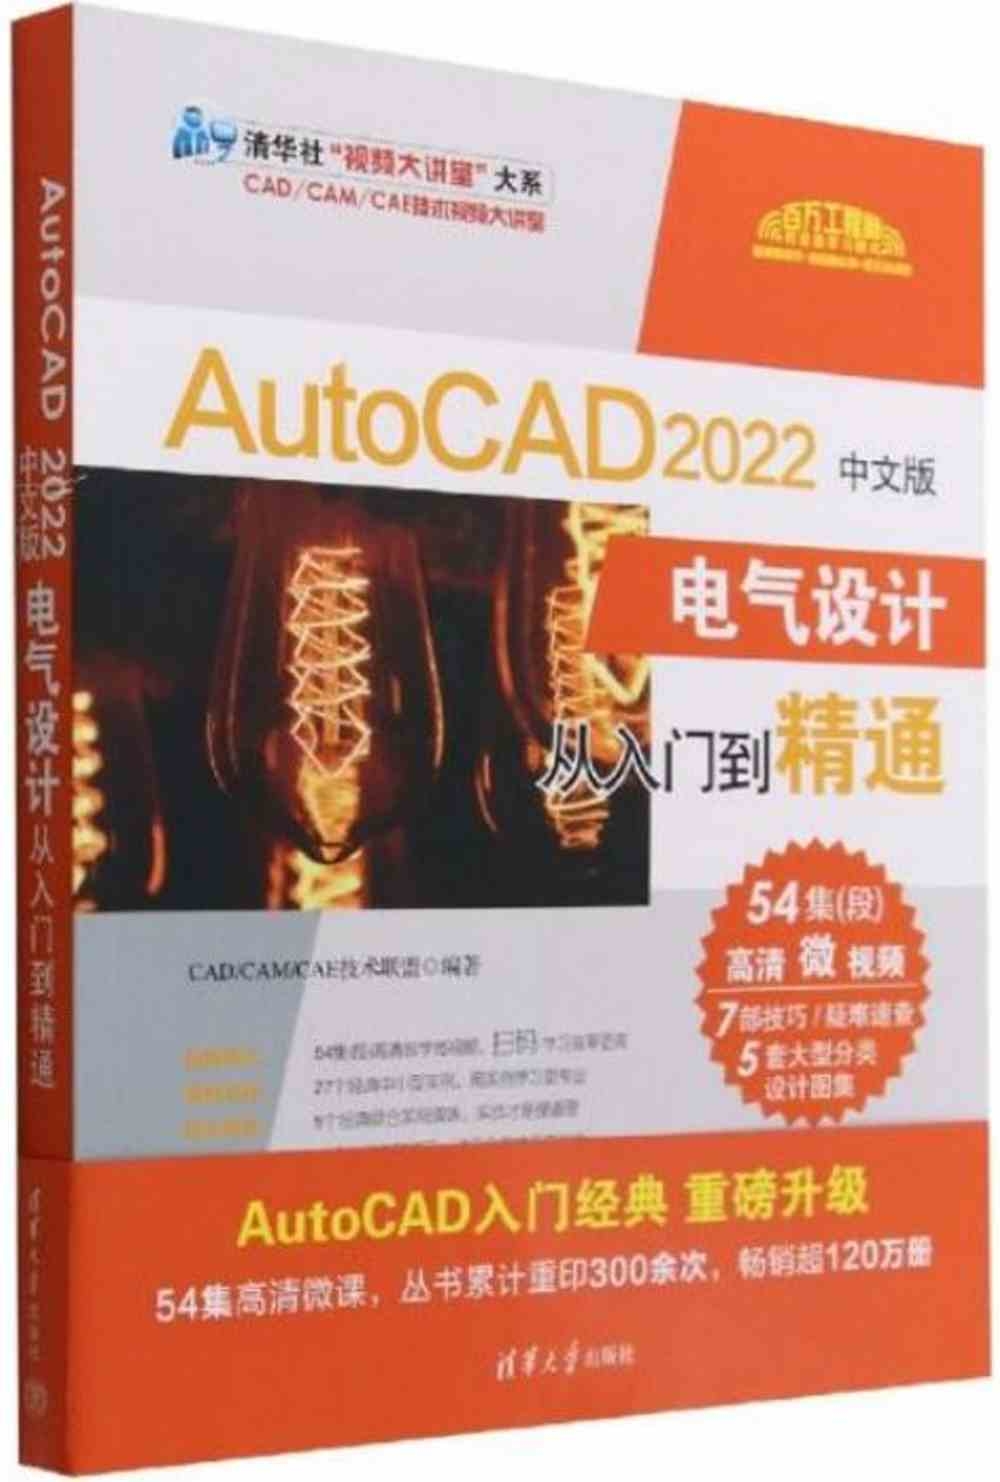 AutoCAD 2022中文版電氣設計從入門到精通